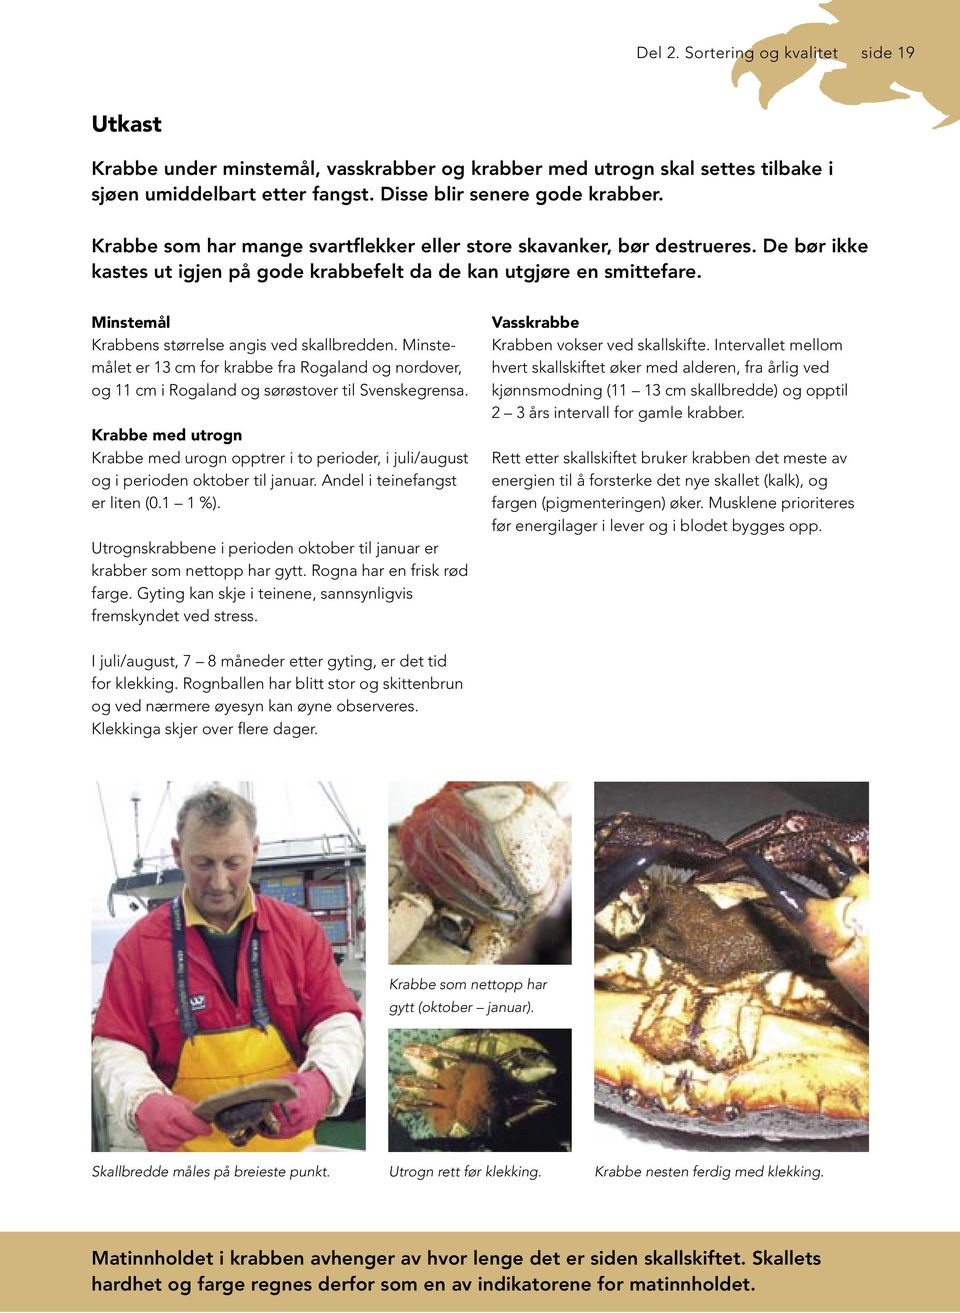 Minstemål Krabbens størrelse angis ved skallbredden. Minstemålet er 13 cm for krabbe fra Rogaland og nordover, og 11 cm i Rogaland og sørøstover til Svenskegrensa.